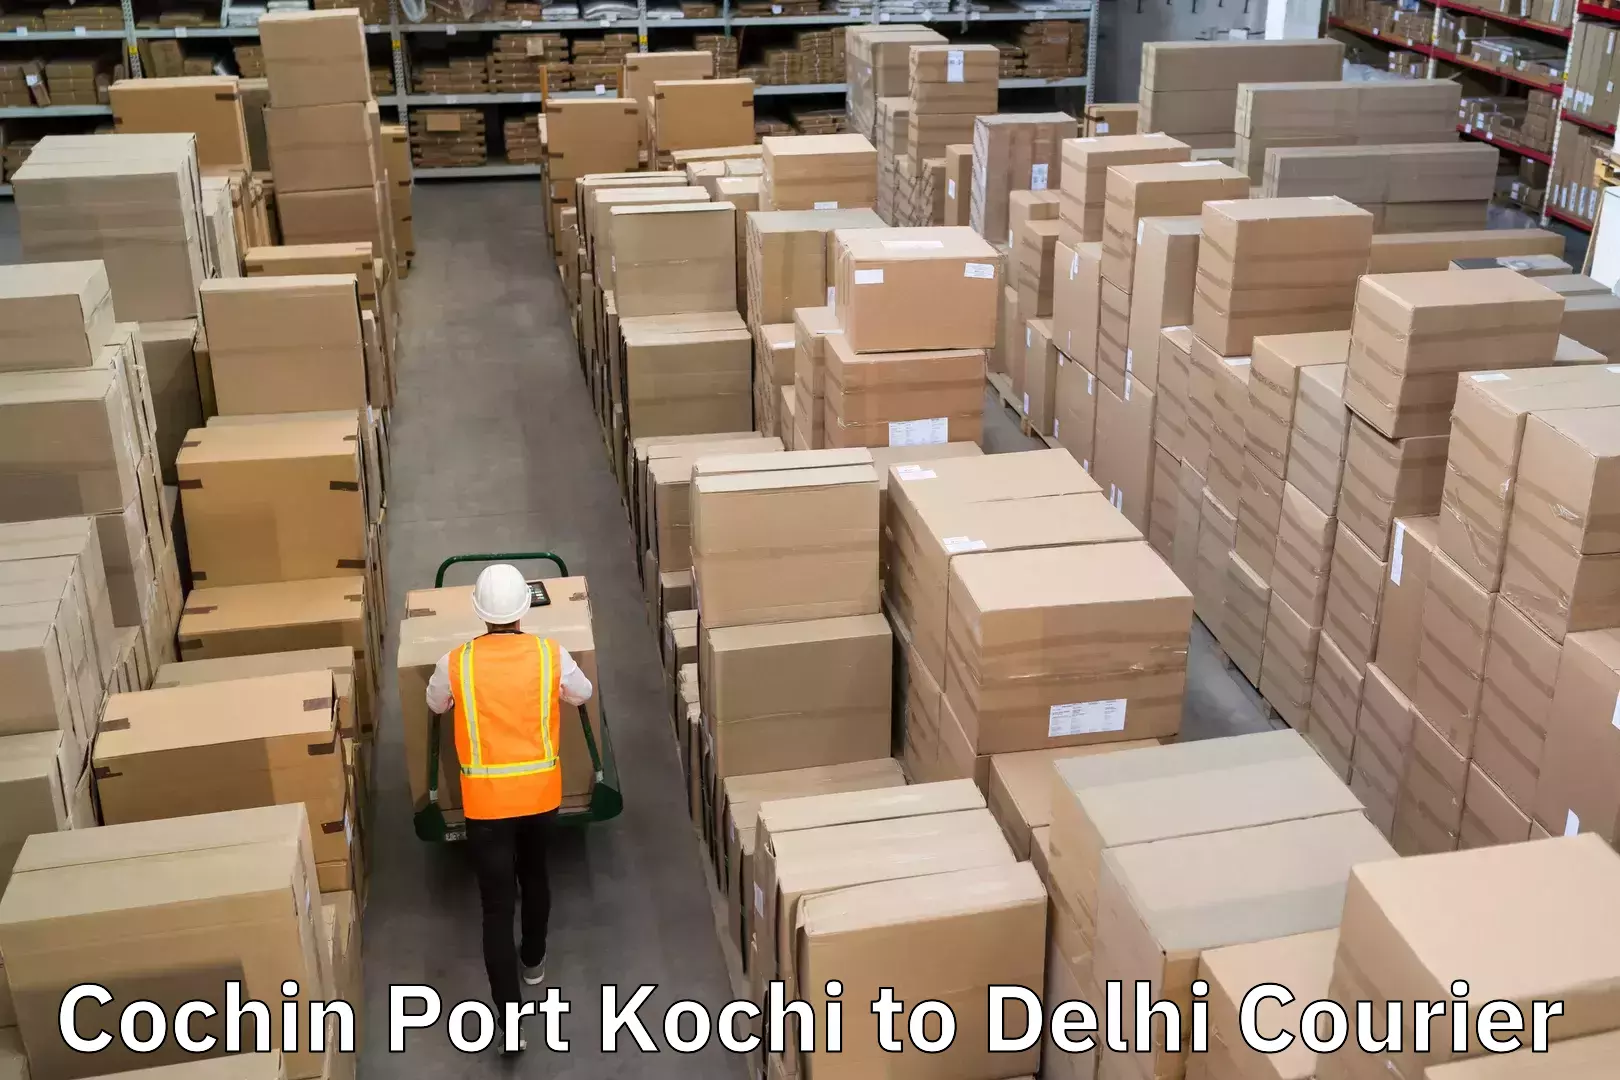 High-priority parcel service Cochin Port Kochi to Delhi